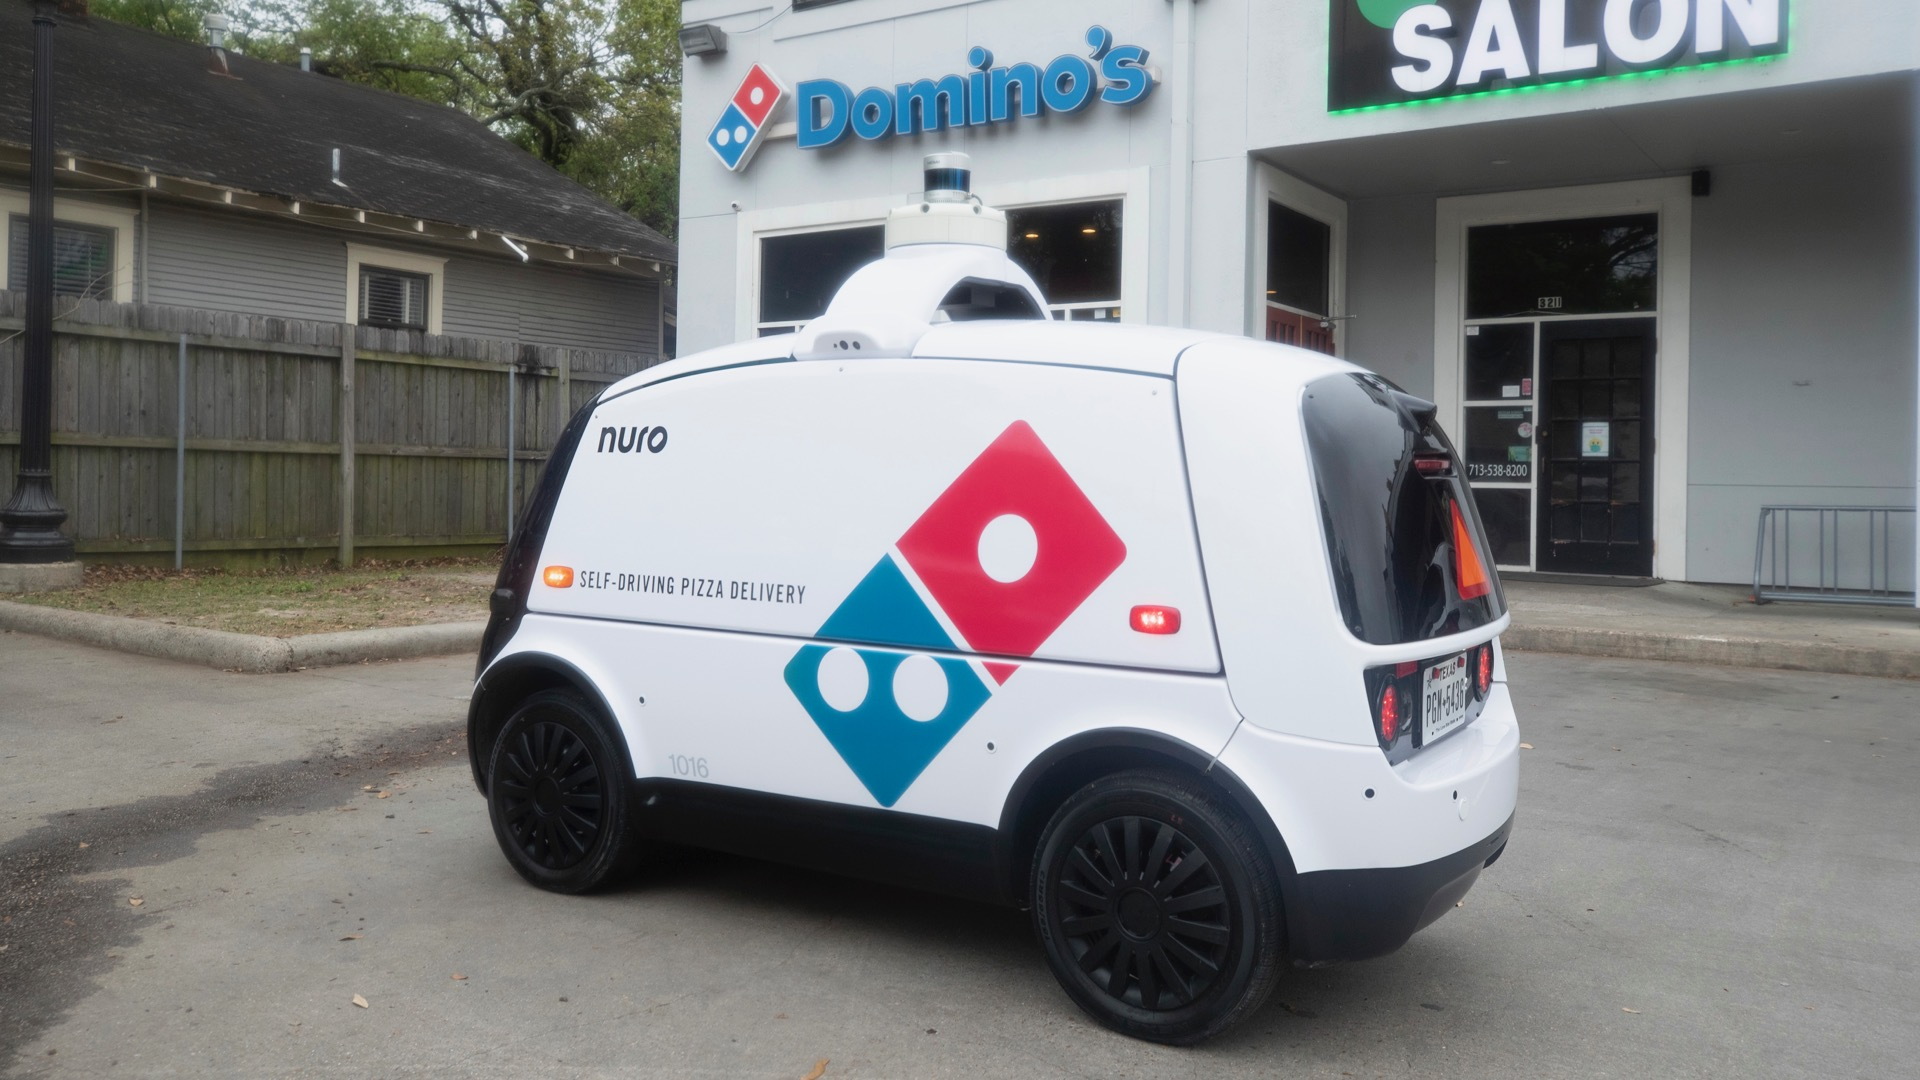 Revival Civilize enclosure Domino's launches autonomous pizza delivery with self-driving robot car